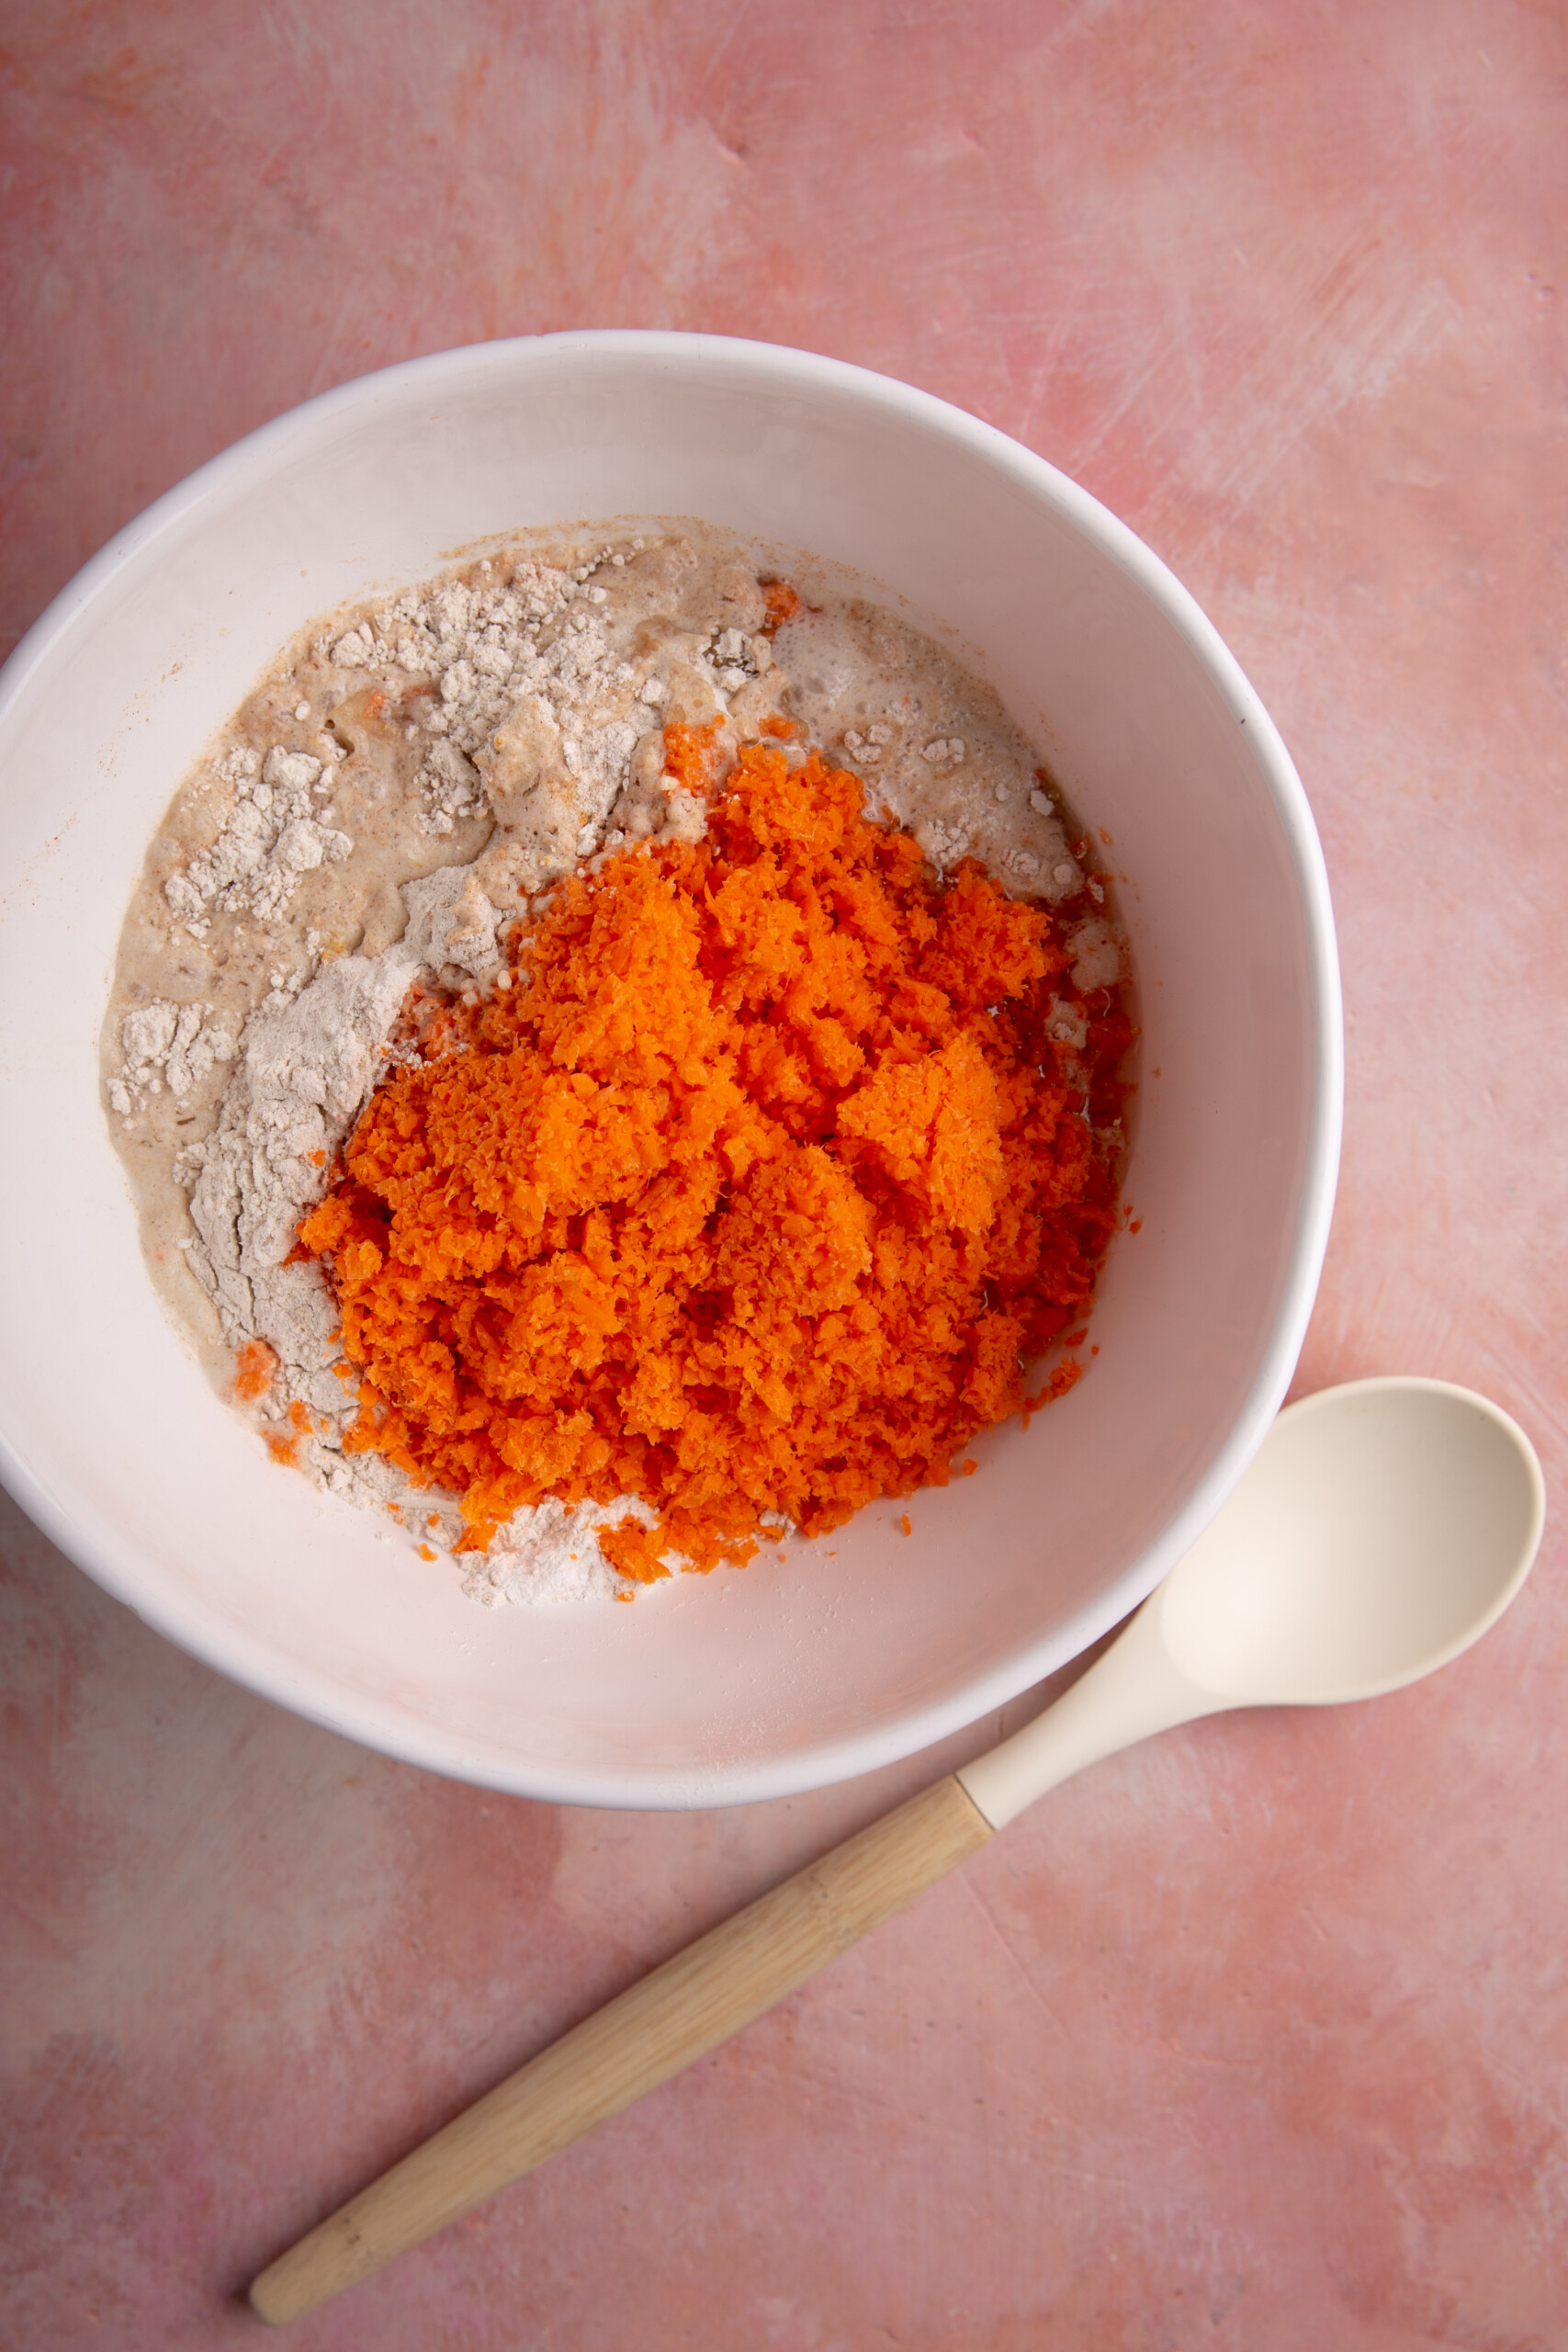 tazon con mezcla para pastel y zanahoria rallada